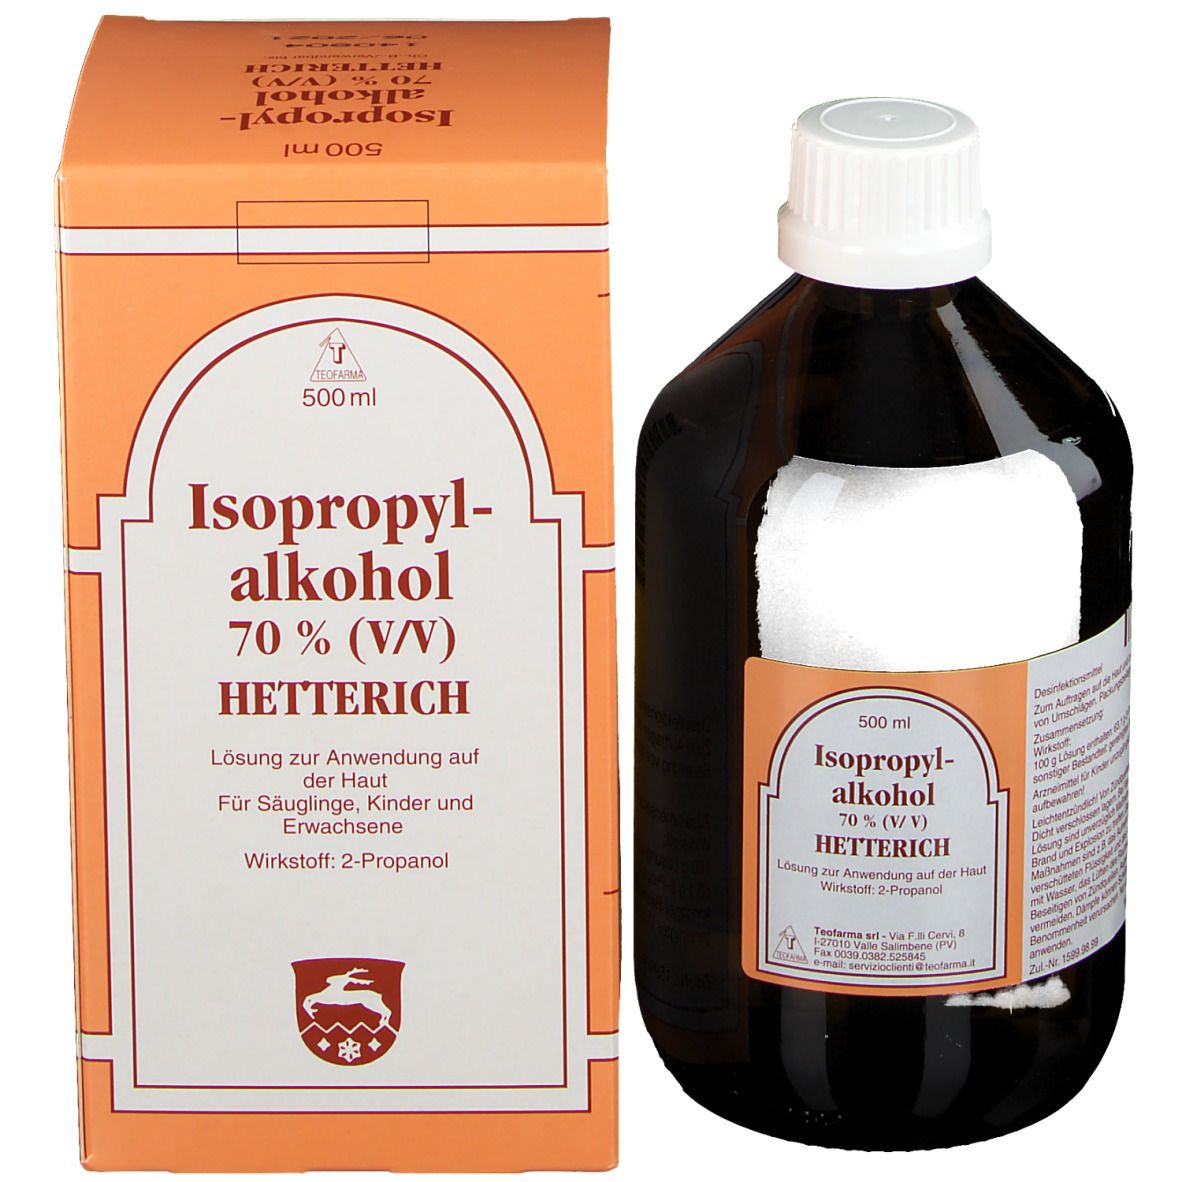 Isopropylalkohol 70% Hetterich